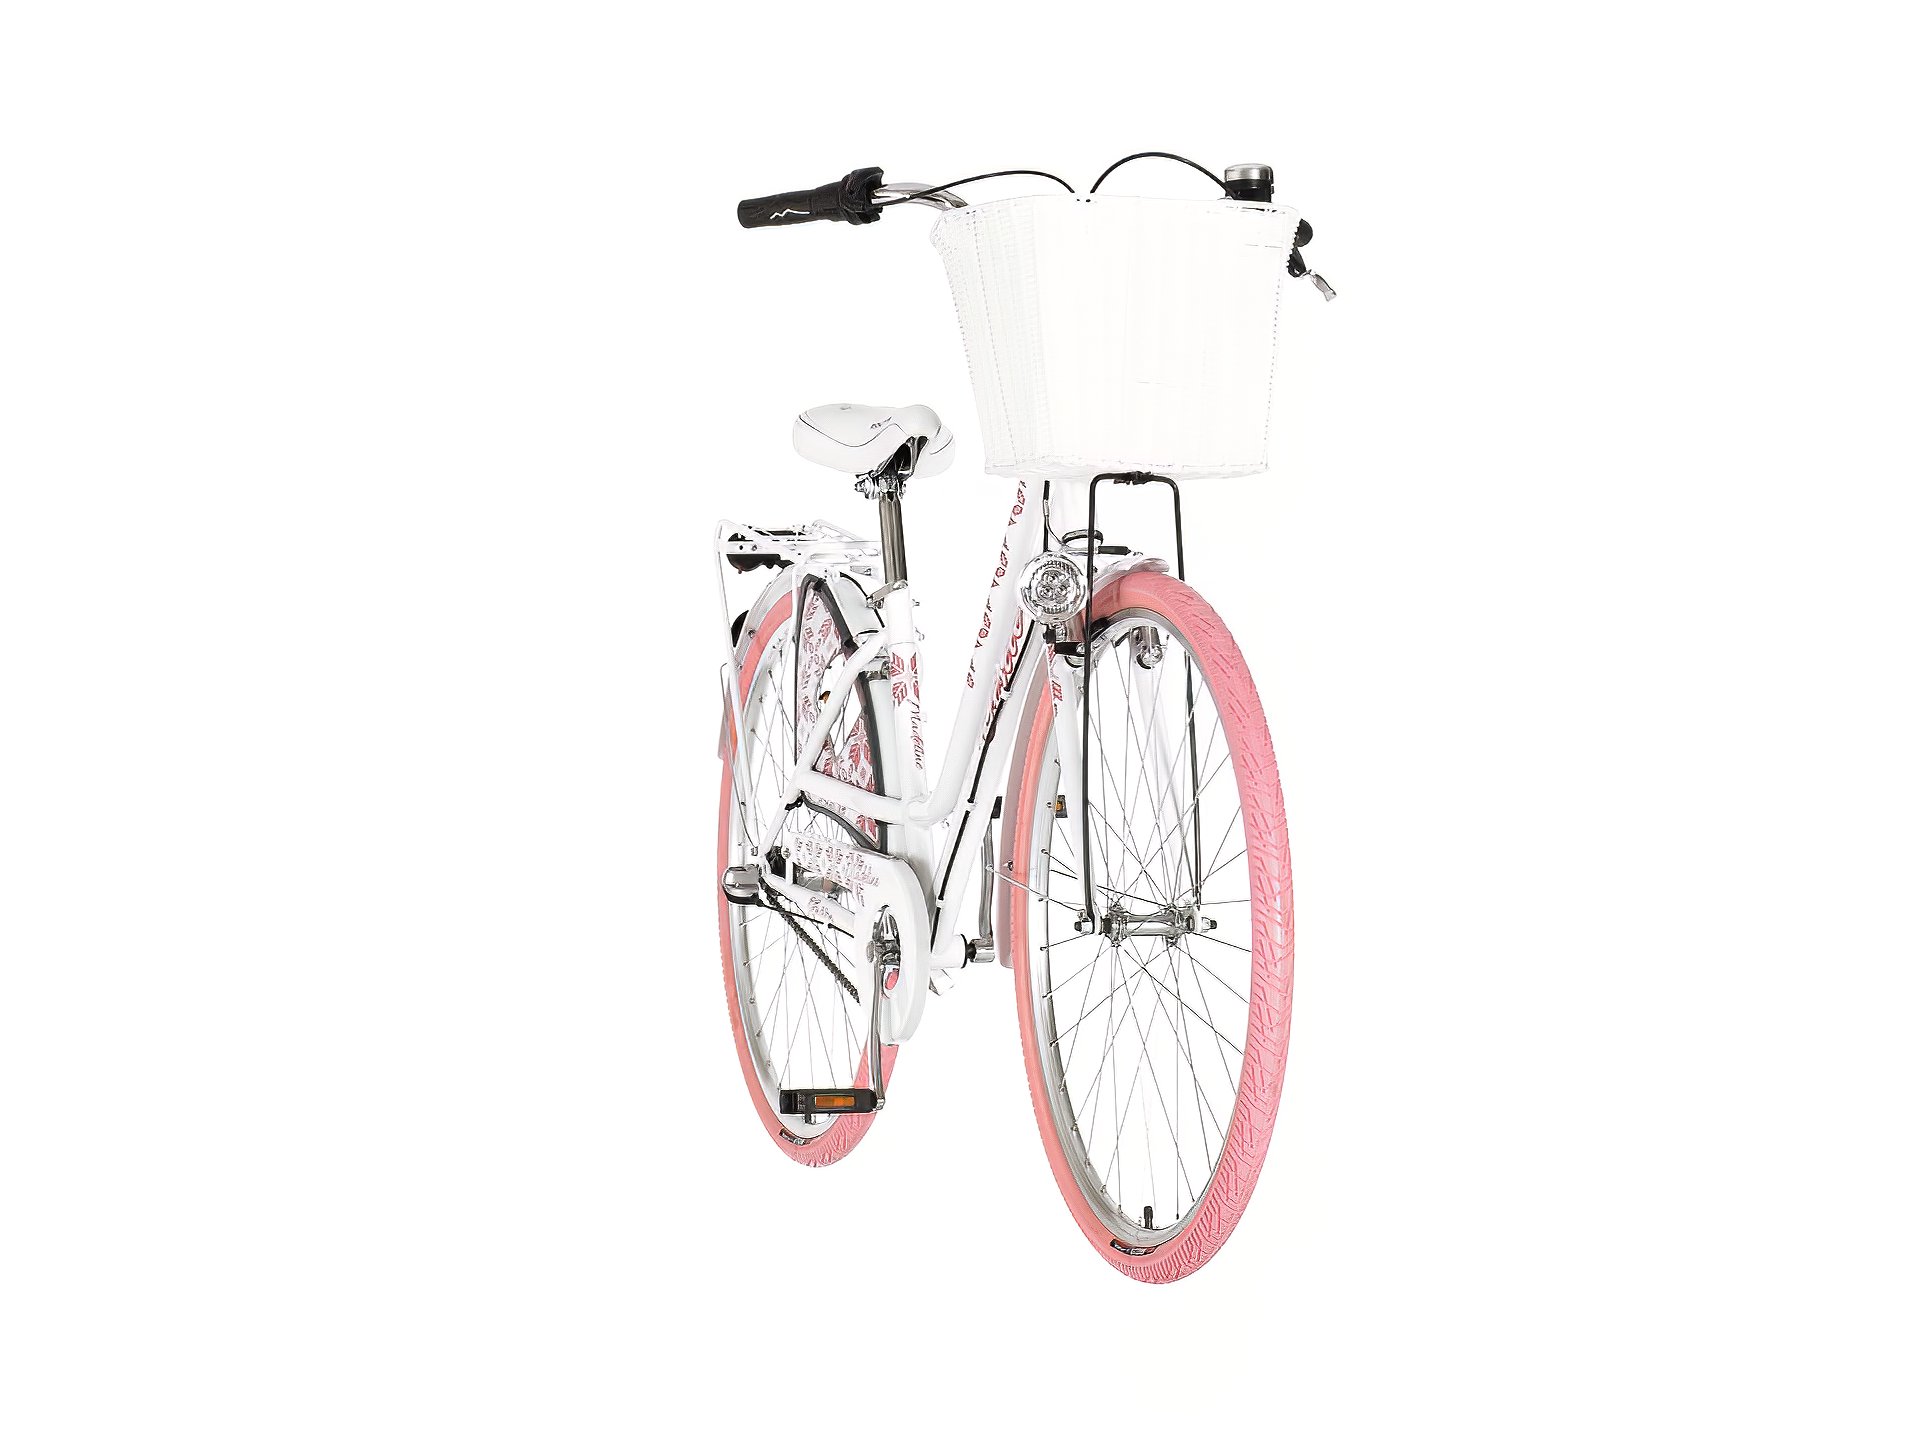 Belo roza madeline ženska bicikla -fas286n